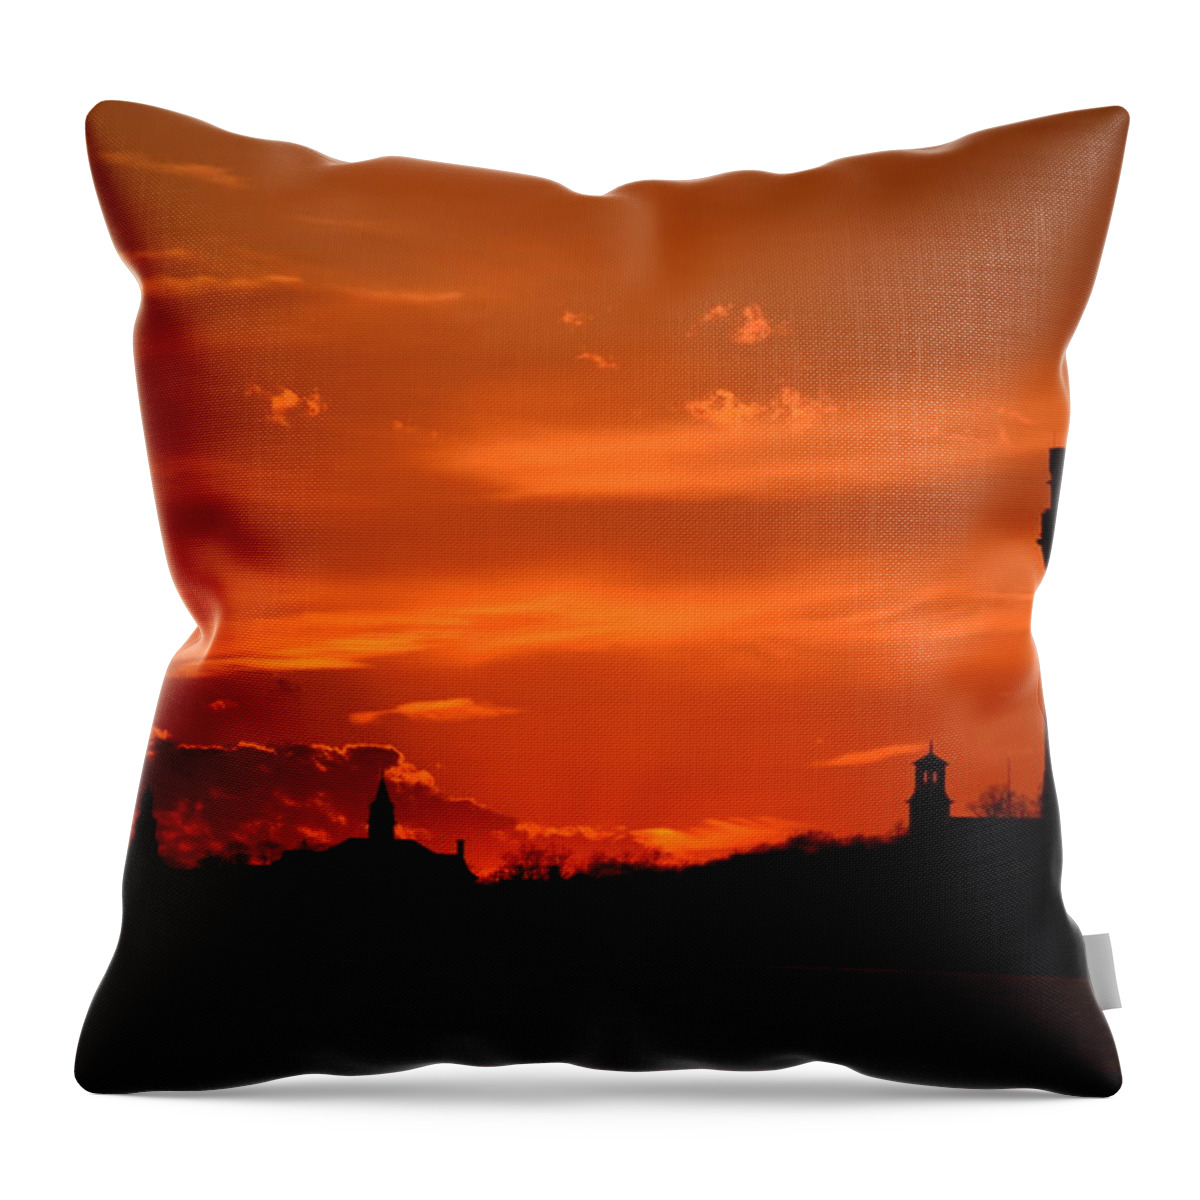 Provincetown Throw Pillow featuring the photograph Evening Fire by Ellen Koplow